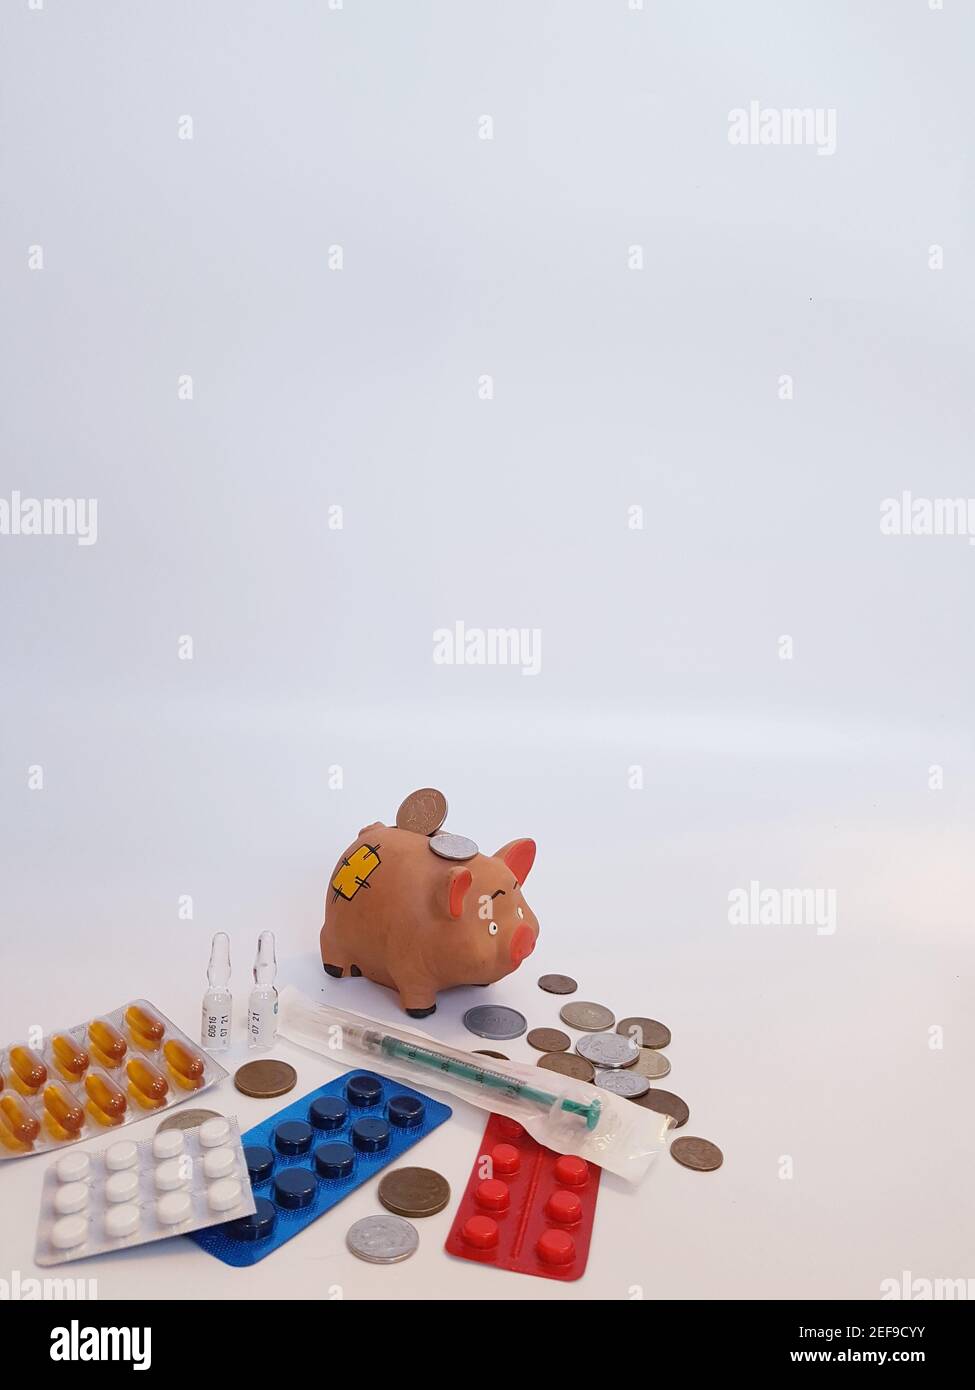 Sparschwein mit Geld, Pillen, Medikamenten, Spritze, Ampullen auf weißem Hintergrund. Behandlungskosten. Gewinne bei Arzneimitteln. Stockfoto